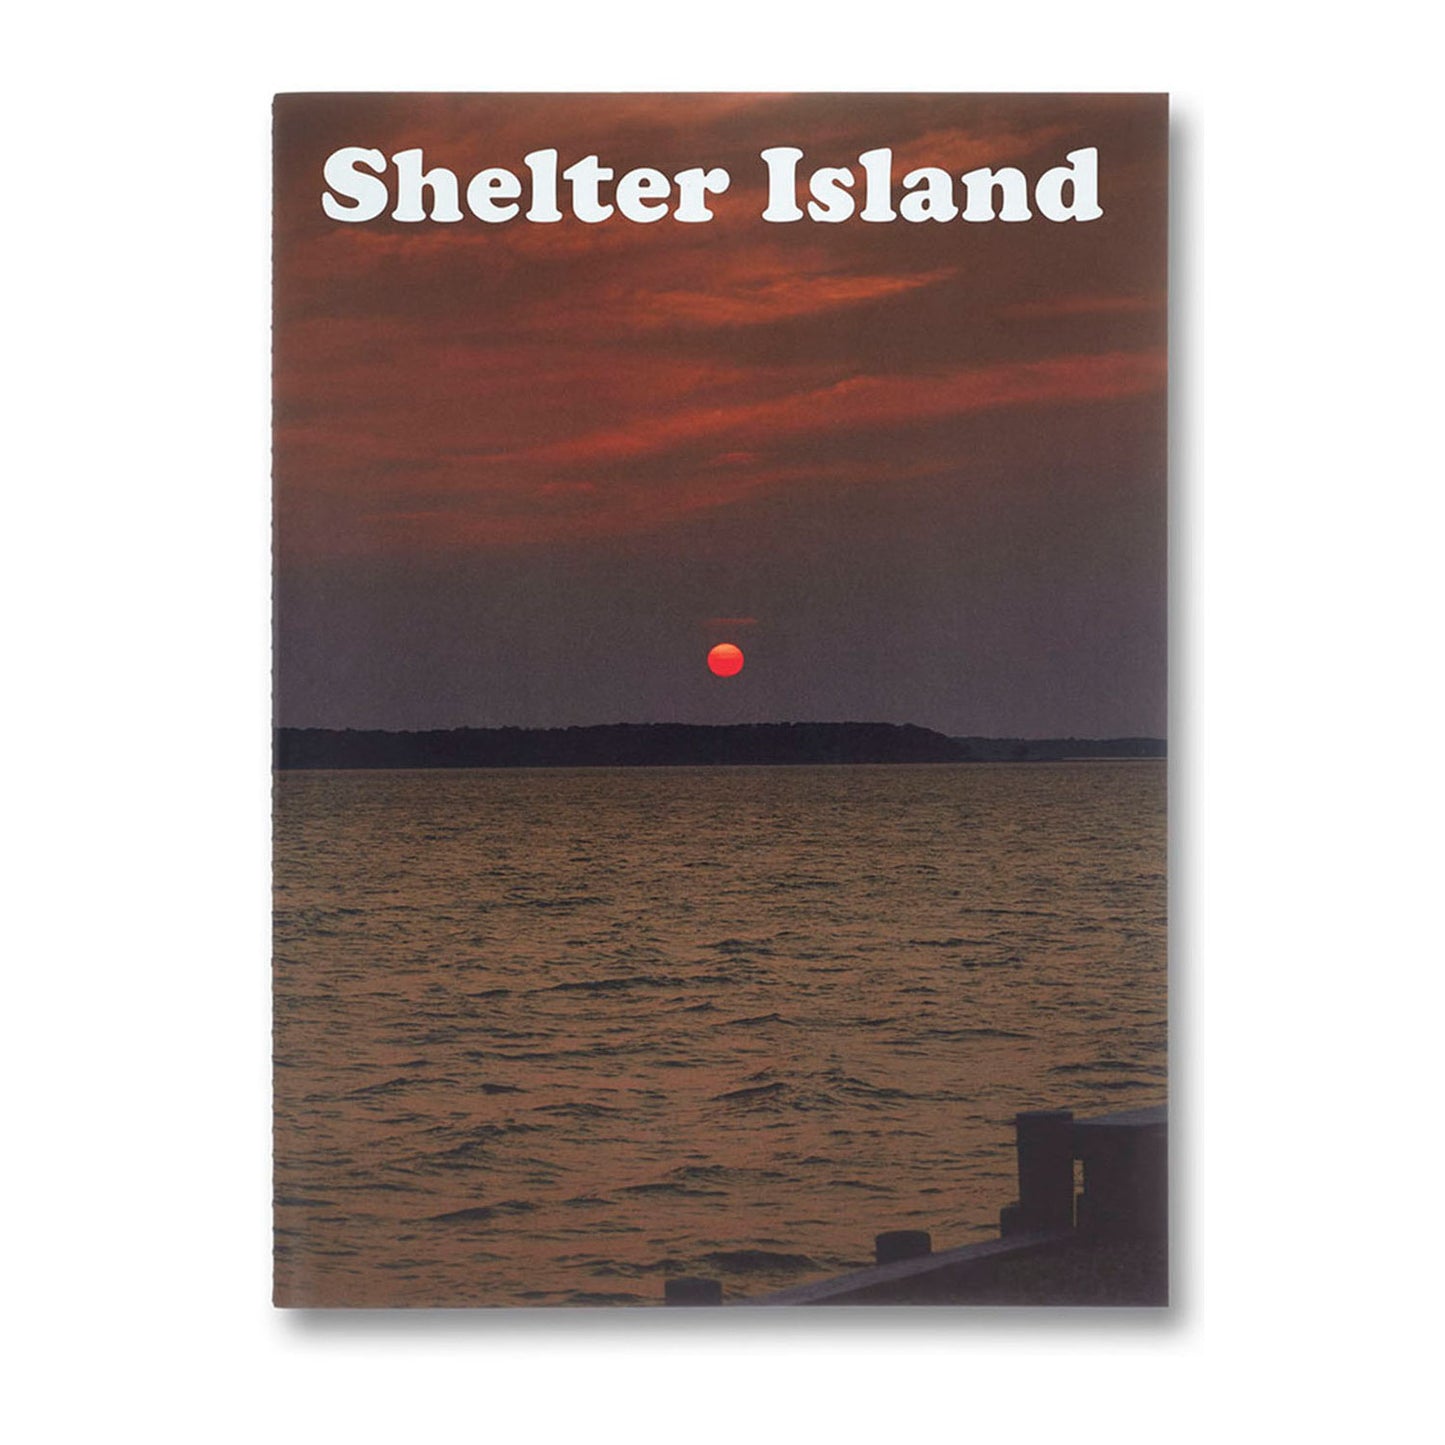 Shelter Island by Roe Ethridge Photo Museum Ireland